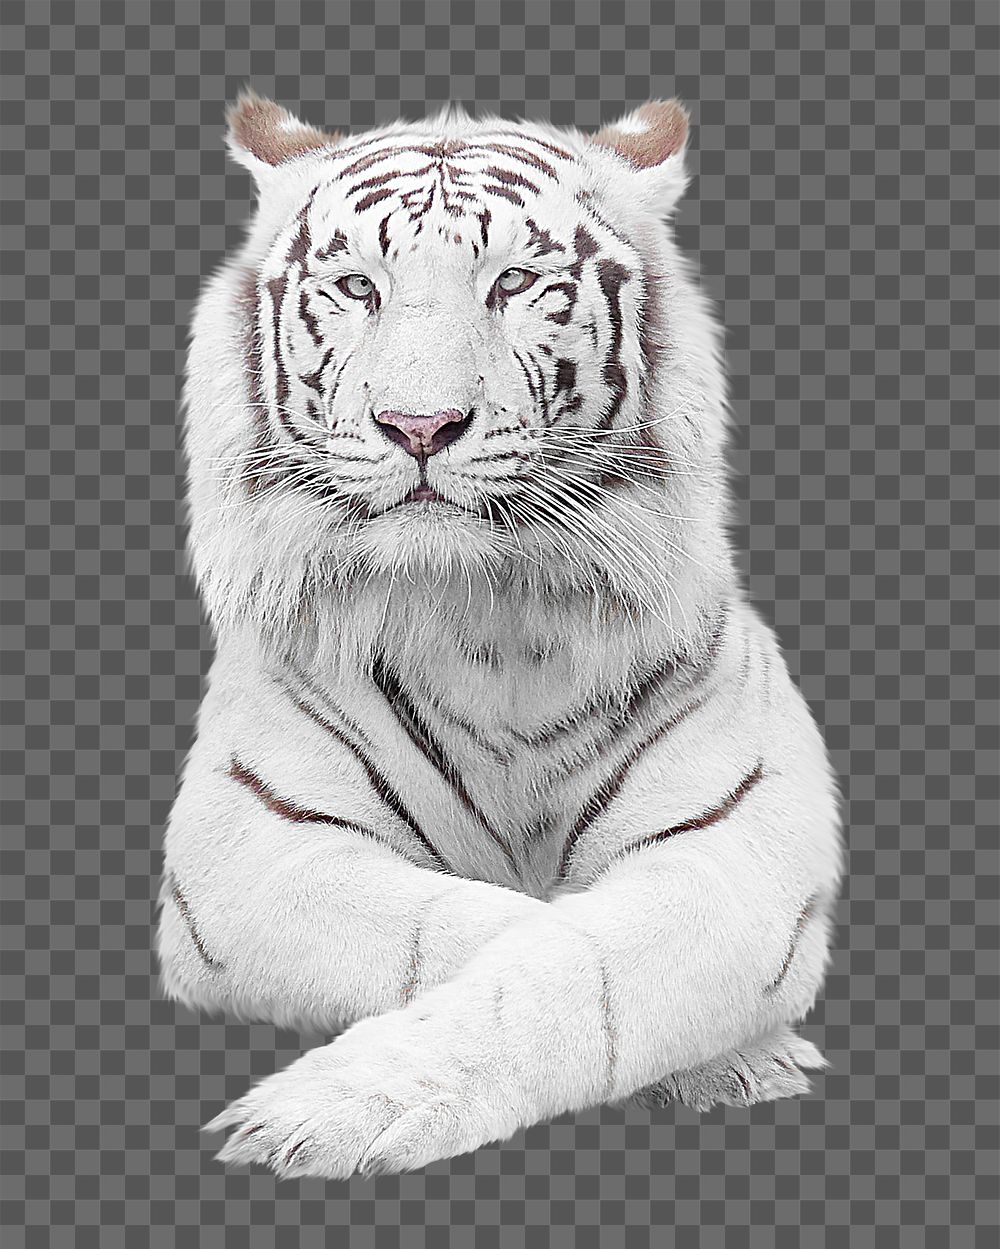 White tiger png, design element, transparent background